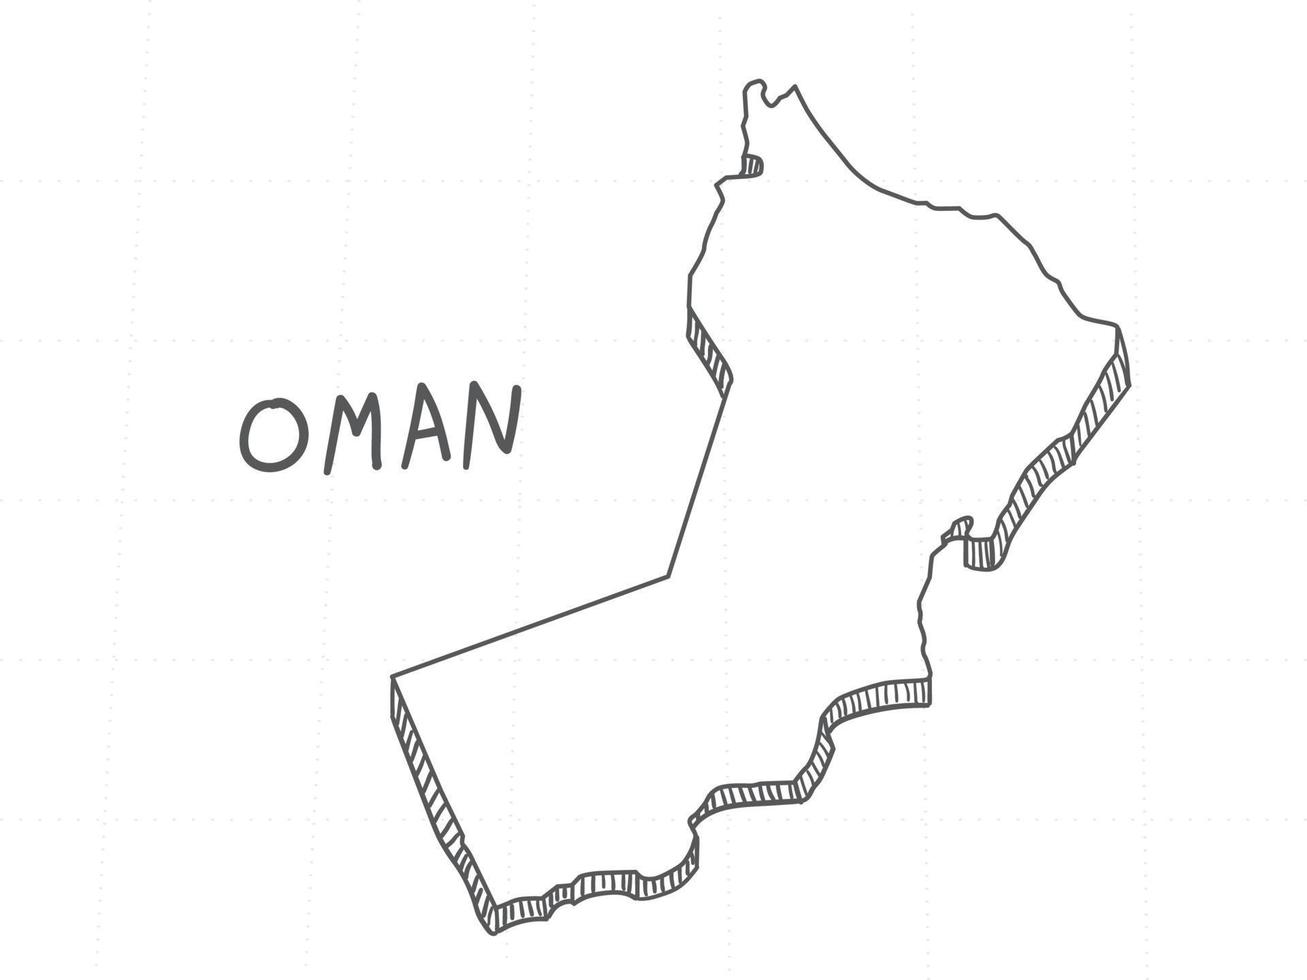 disegnato a mano della mappa 3d dell'oman su sfondo bianco. vettore